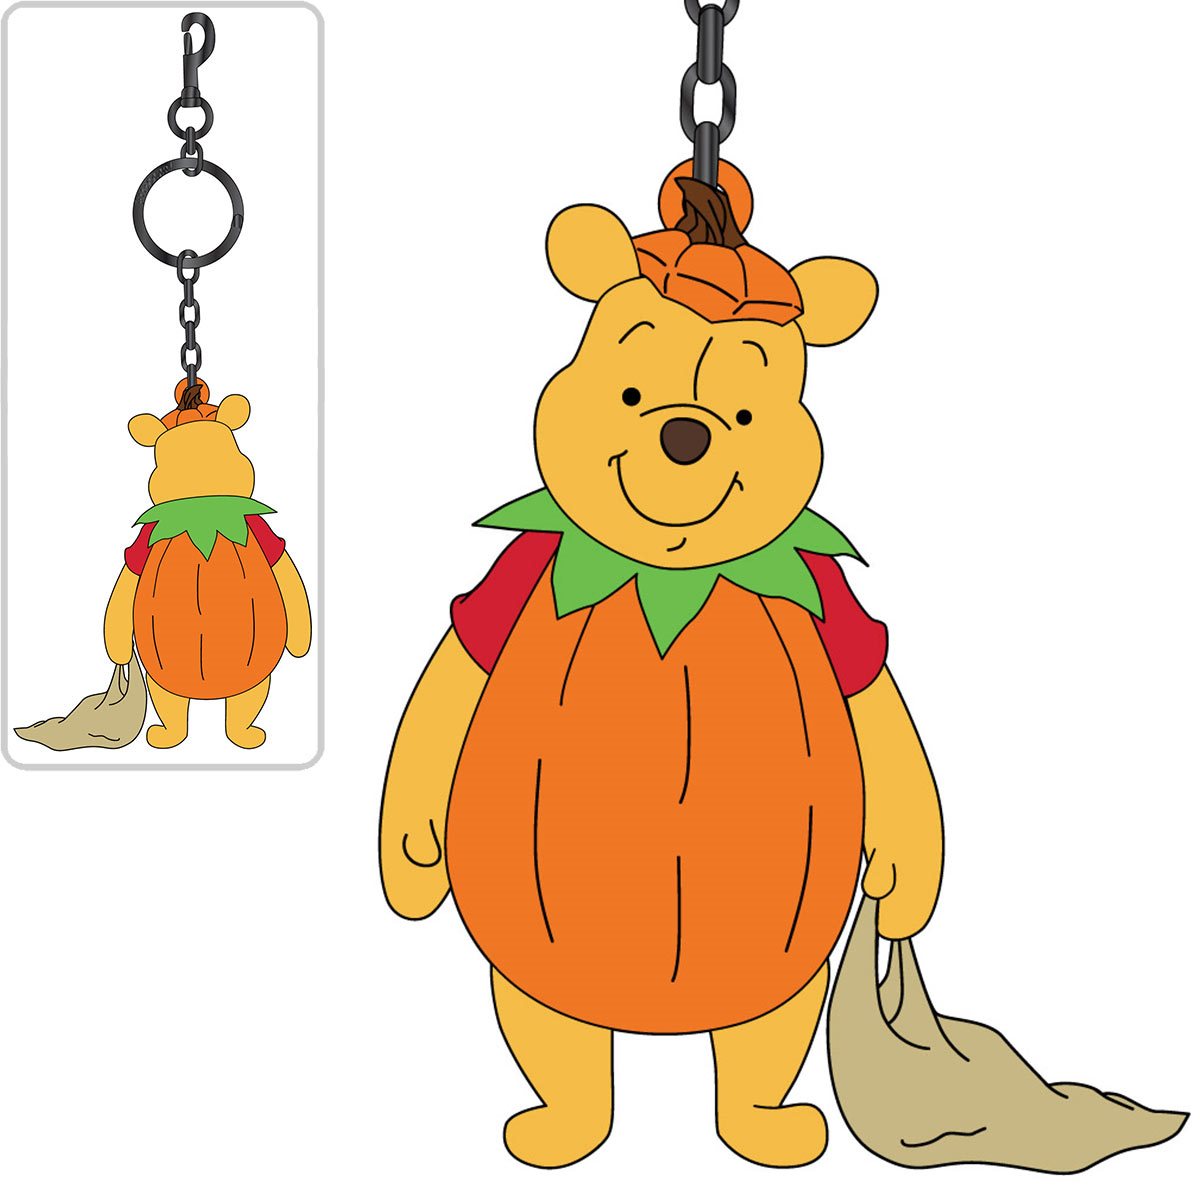 Loungefly Disney Winnie The Pooh Rainy Day Keychain